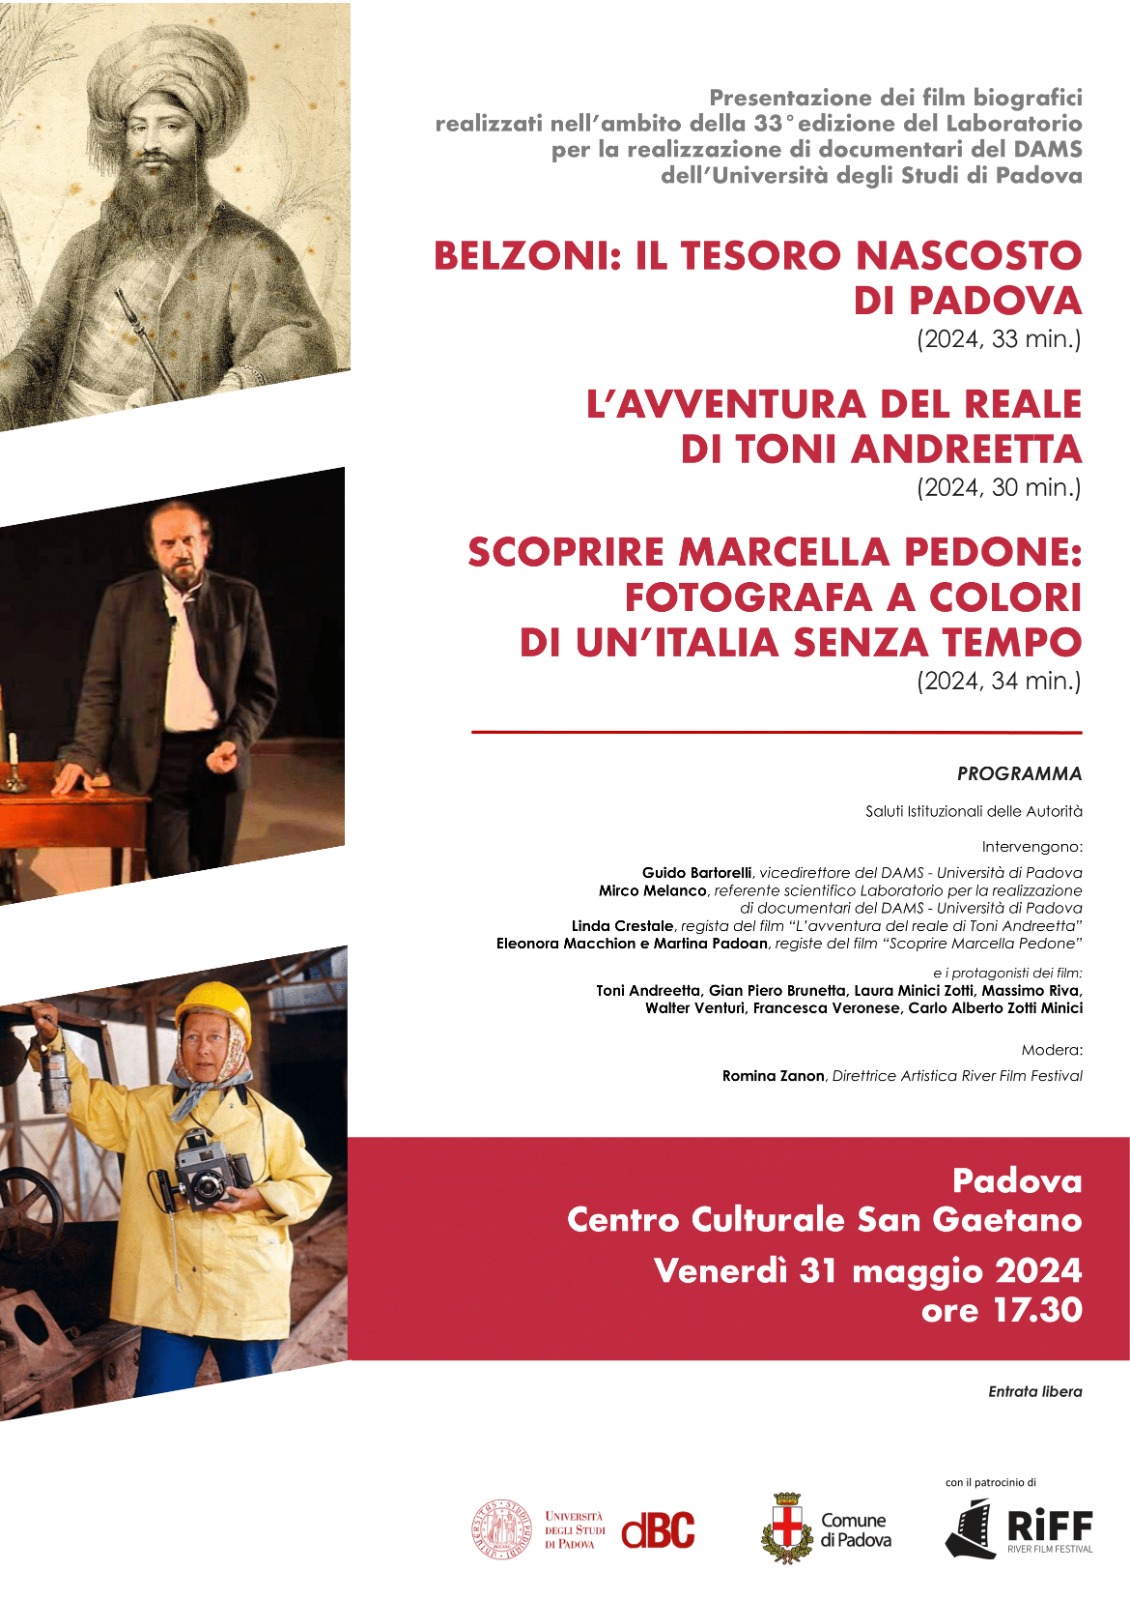 Un documentario su Giovanni Battista Belzoni. Al Centro culturale San Gaetano di Padova.